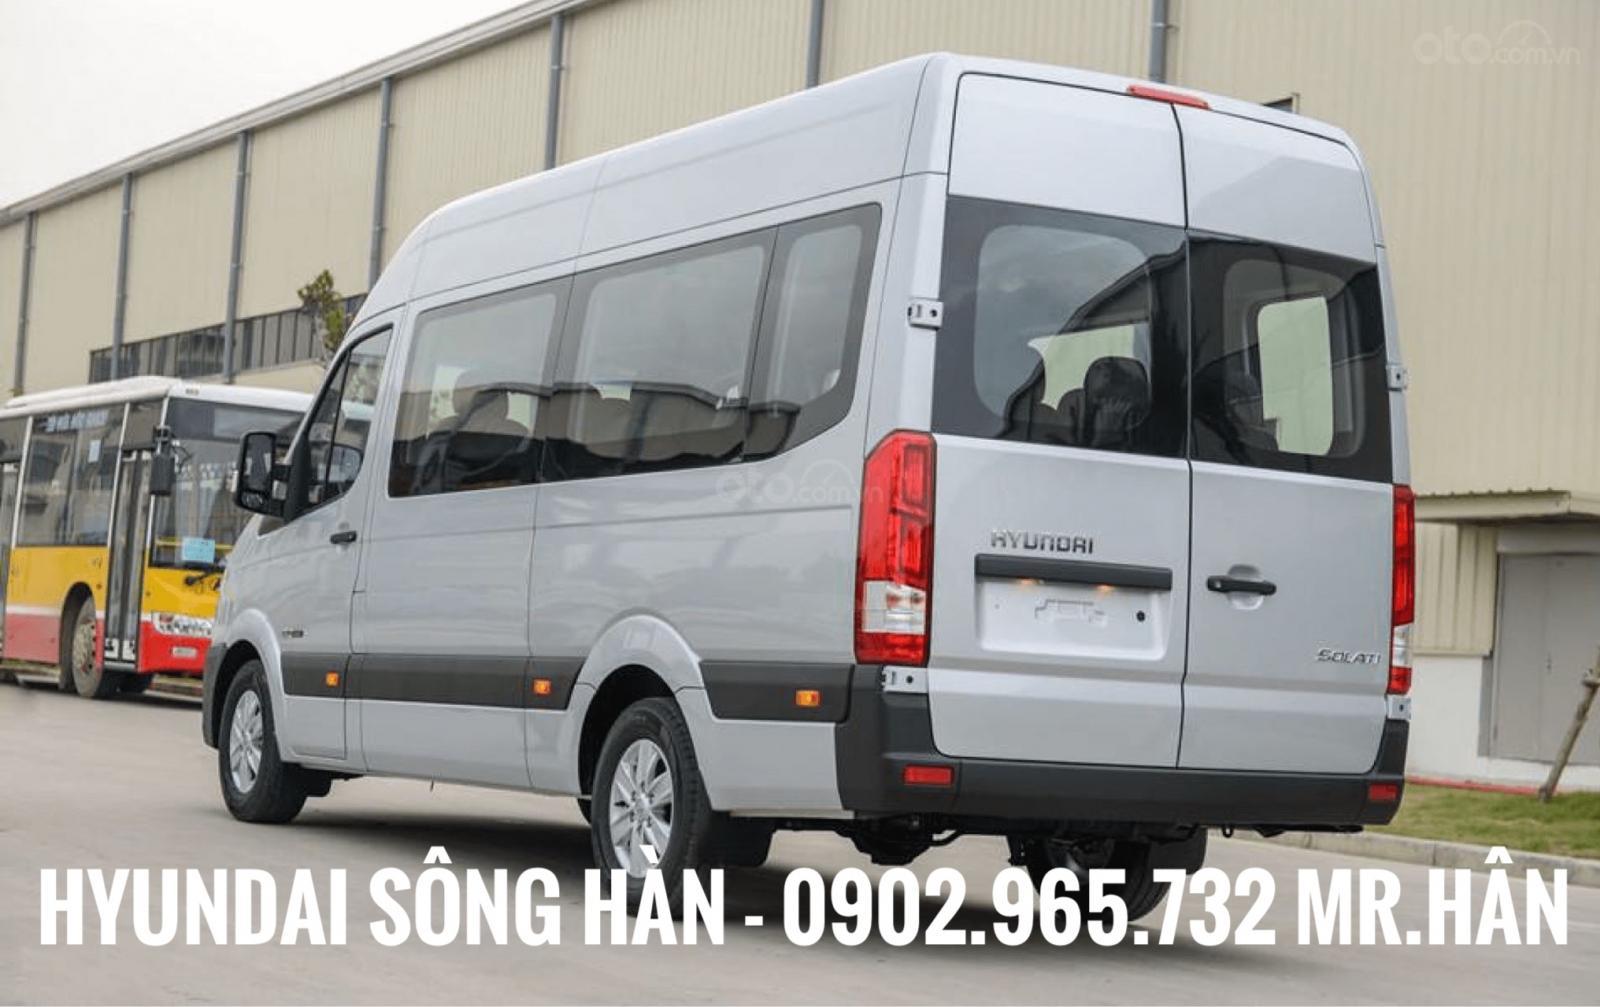 Bán Hyundai Solati 2019 tại Đà Nẵng, liên hệ: Mr. Hân 0902 965 732-7